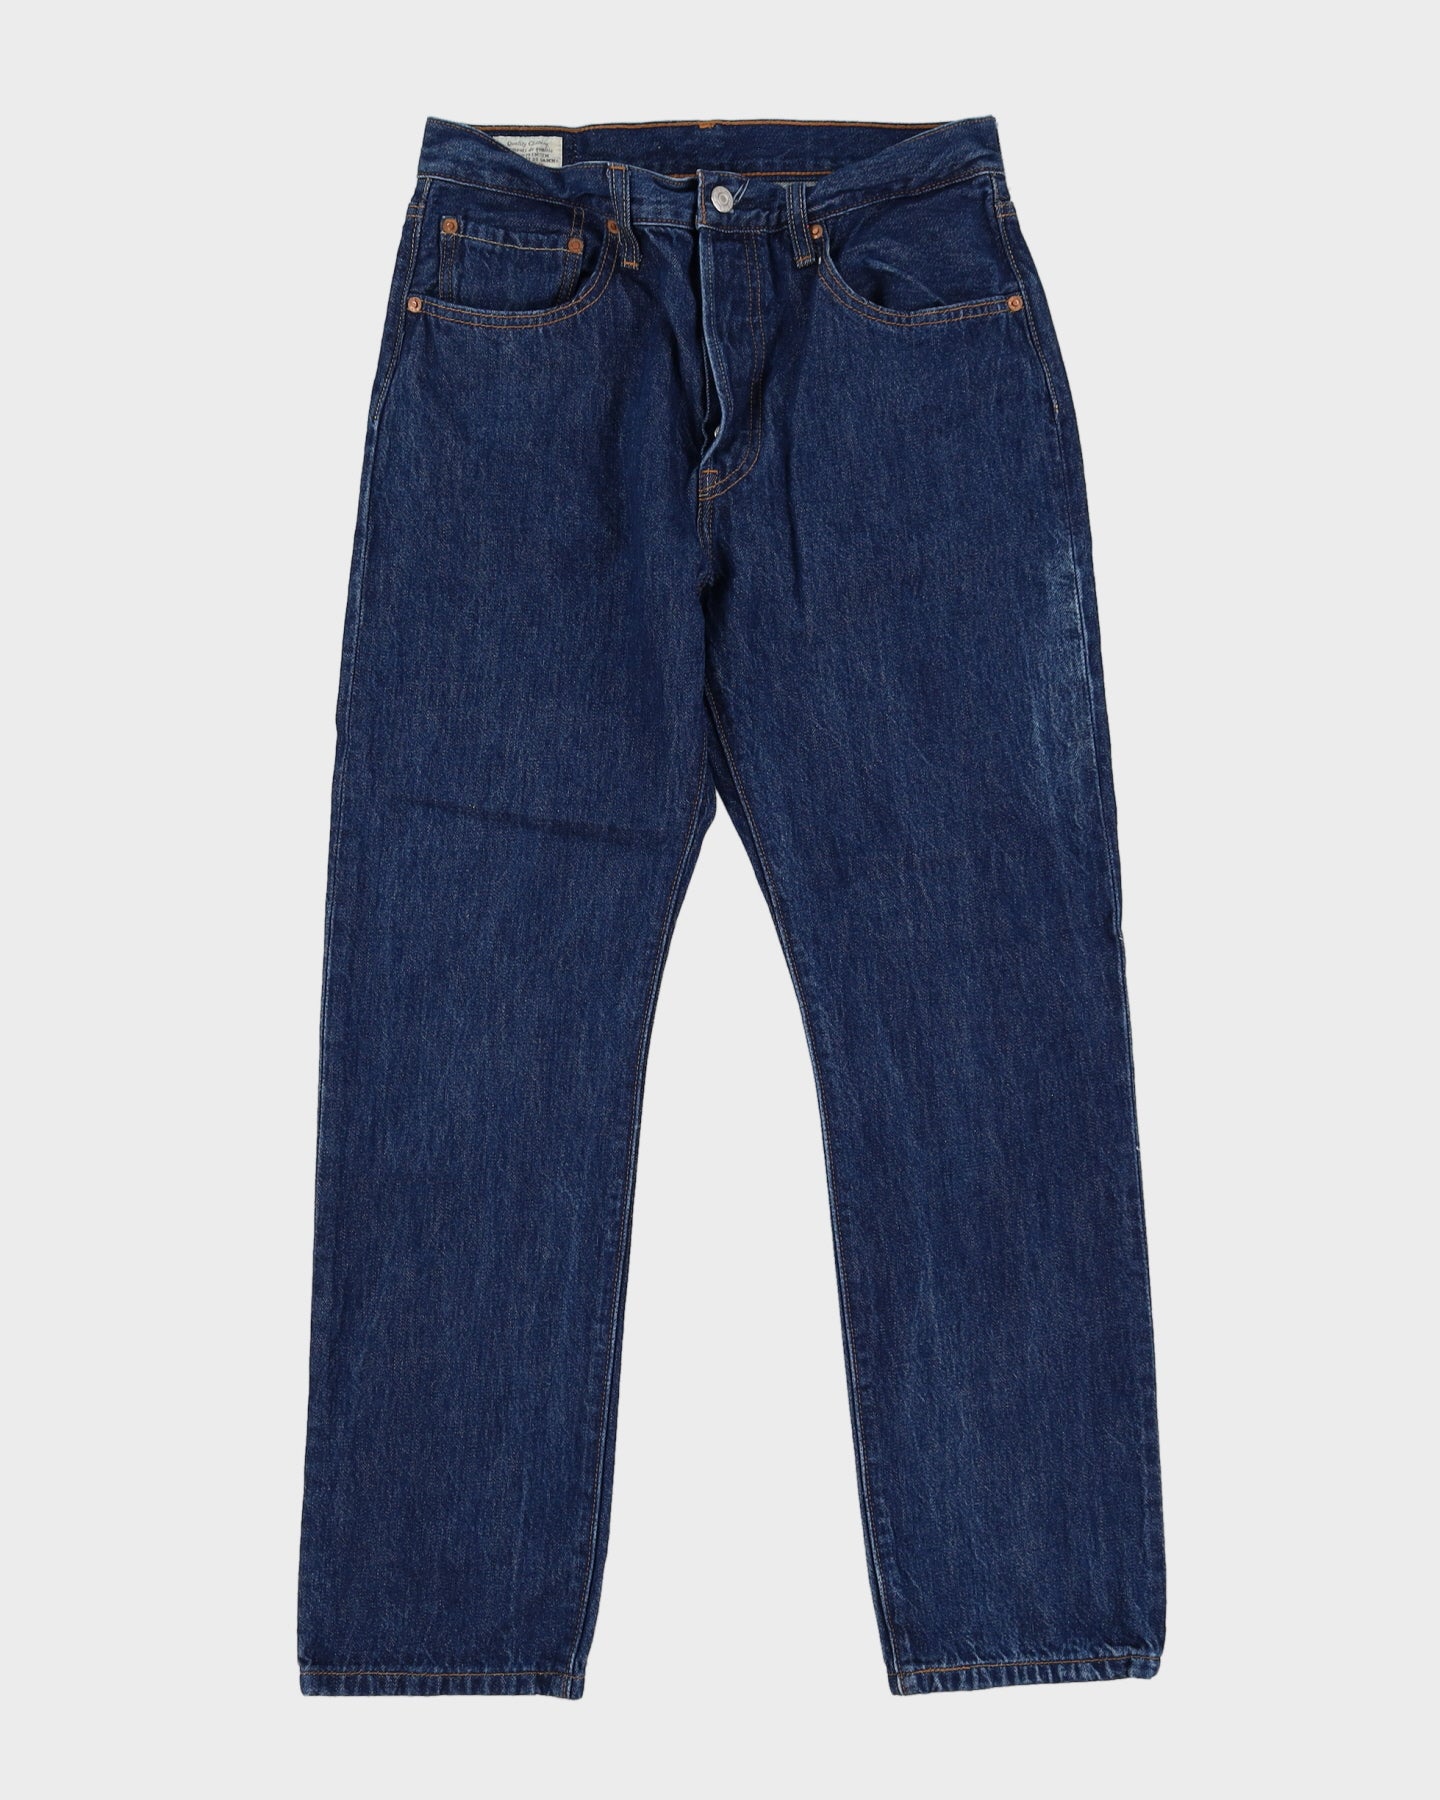 Levi's 501 Blue Jeans - W30 L29